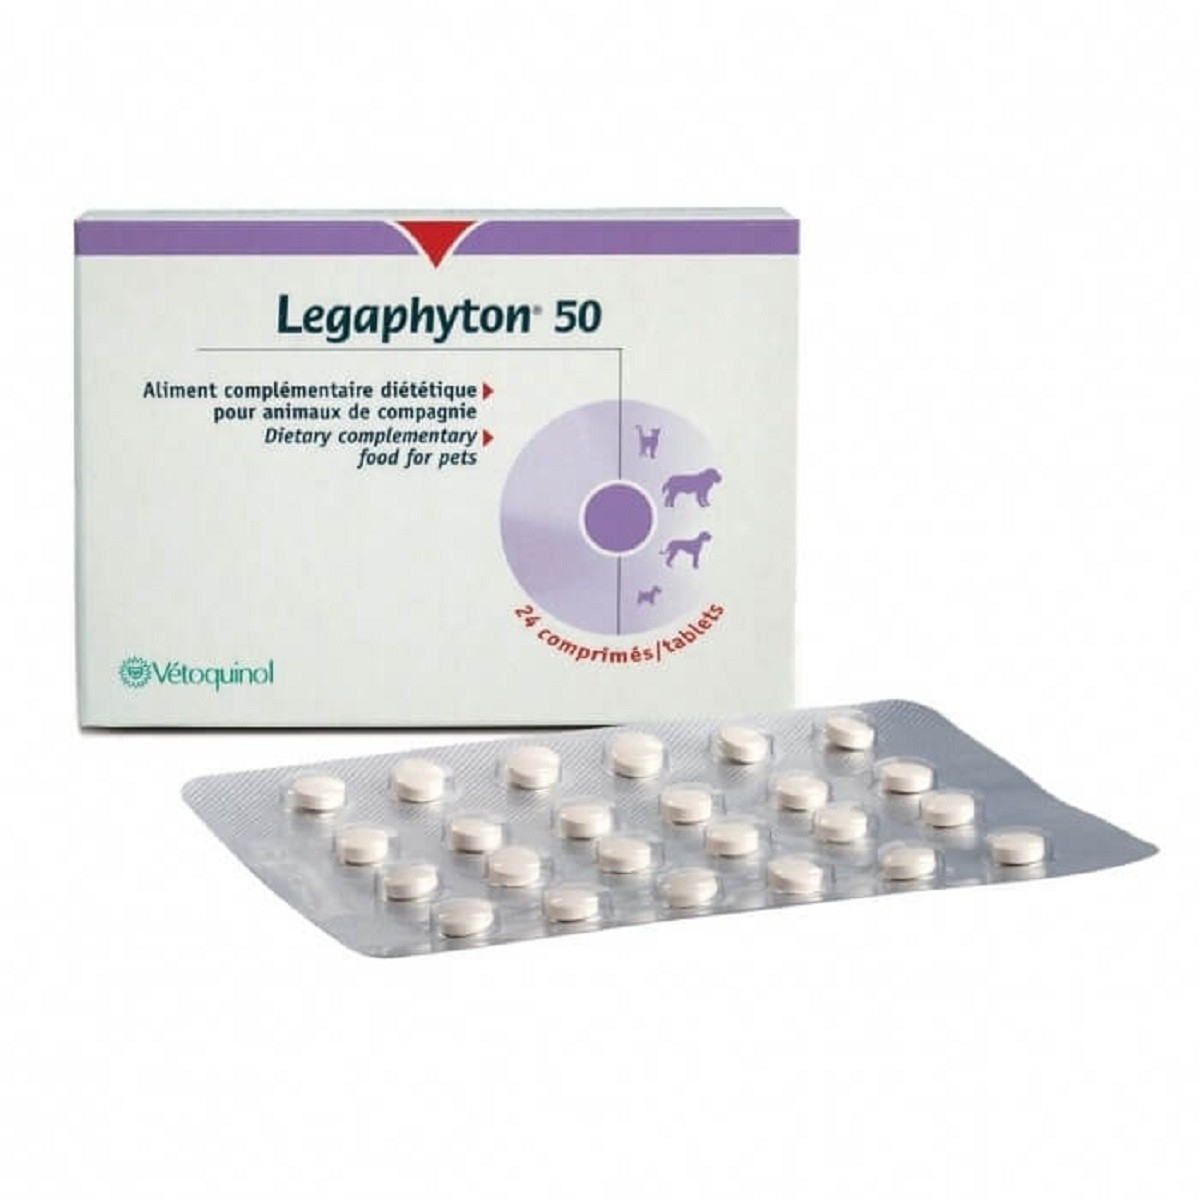 Legaphyton 50 Vetoquinol Complément pour insuffisance hépatique pour chien et chat